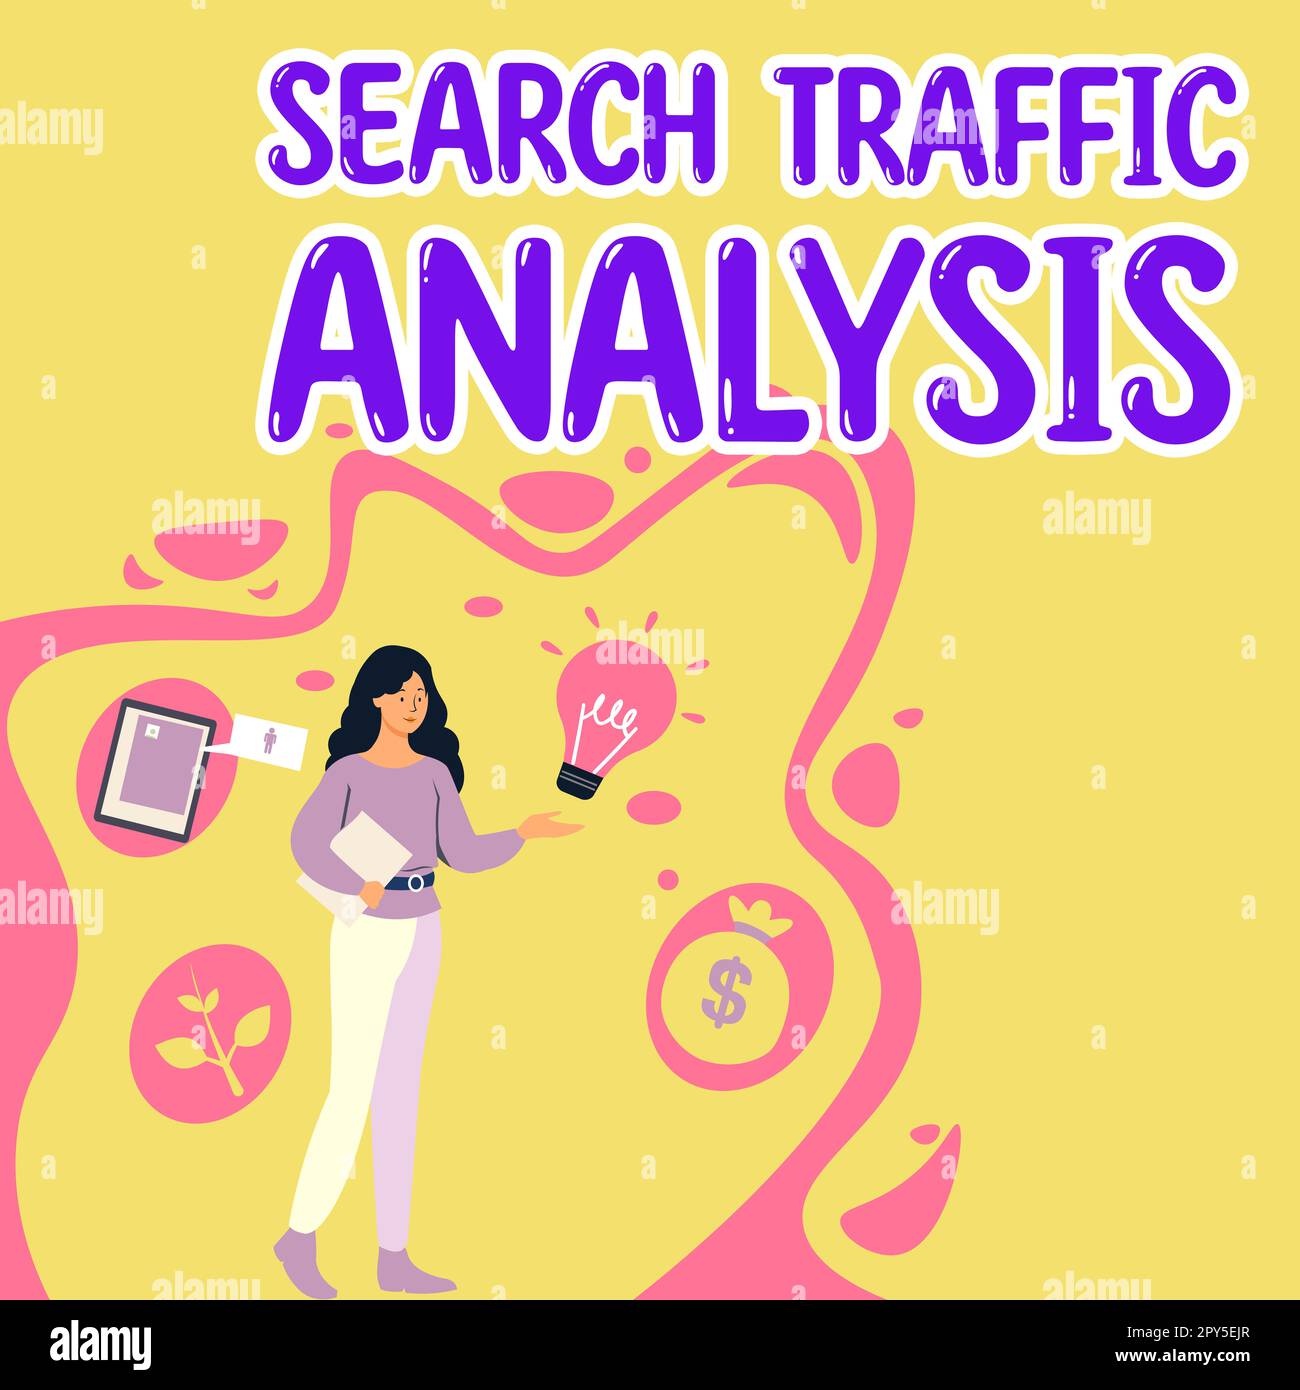 Konzeptionelle Beschriftung Analyse des Suchverkehrs. Business Overview Service, mit dem Internetnutzer nach Inhalten suchen können Stockfoto